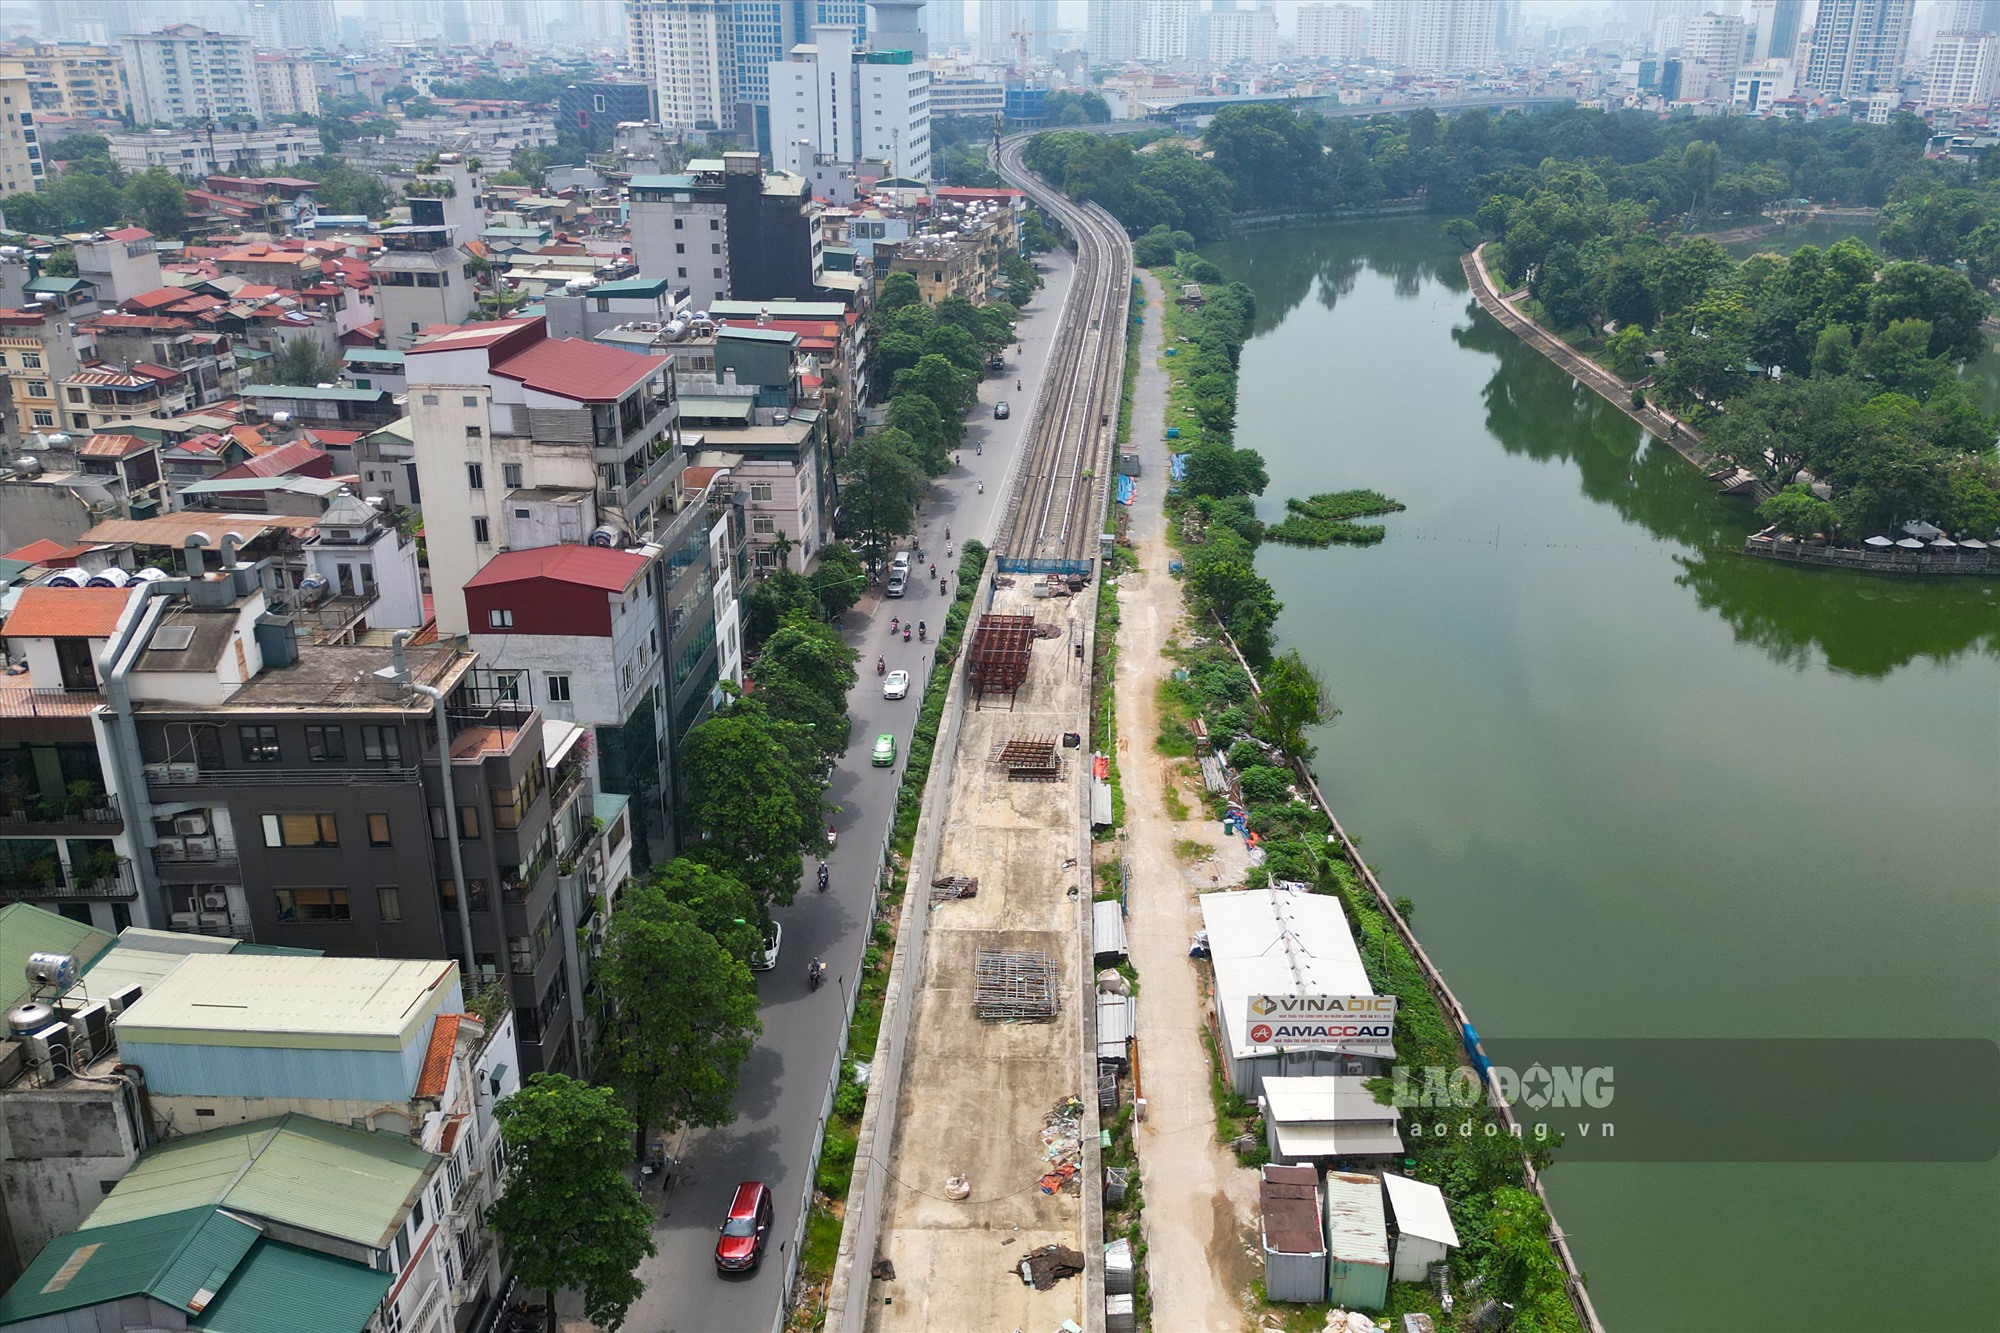 Dự án đường sắt đô thị Nhổn - Ga Hà Nội có chiều dài 12,5km, gồm 12 ga (8,5km đi trên cao với tám ga trên cao và 4km đi ngầm với 4 ga ngầm). Tuyến có điểm đầu tại Nhổn, điểm cuối tại ga Hà Nội (trên đường Trần Hưng Đạo).